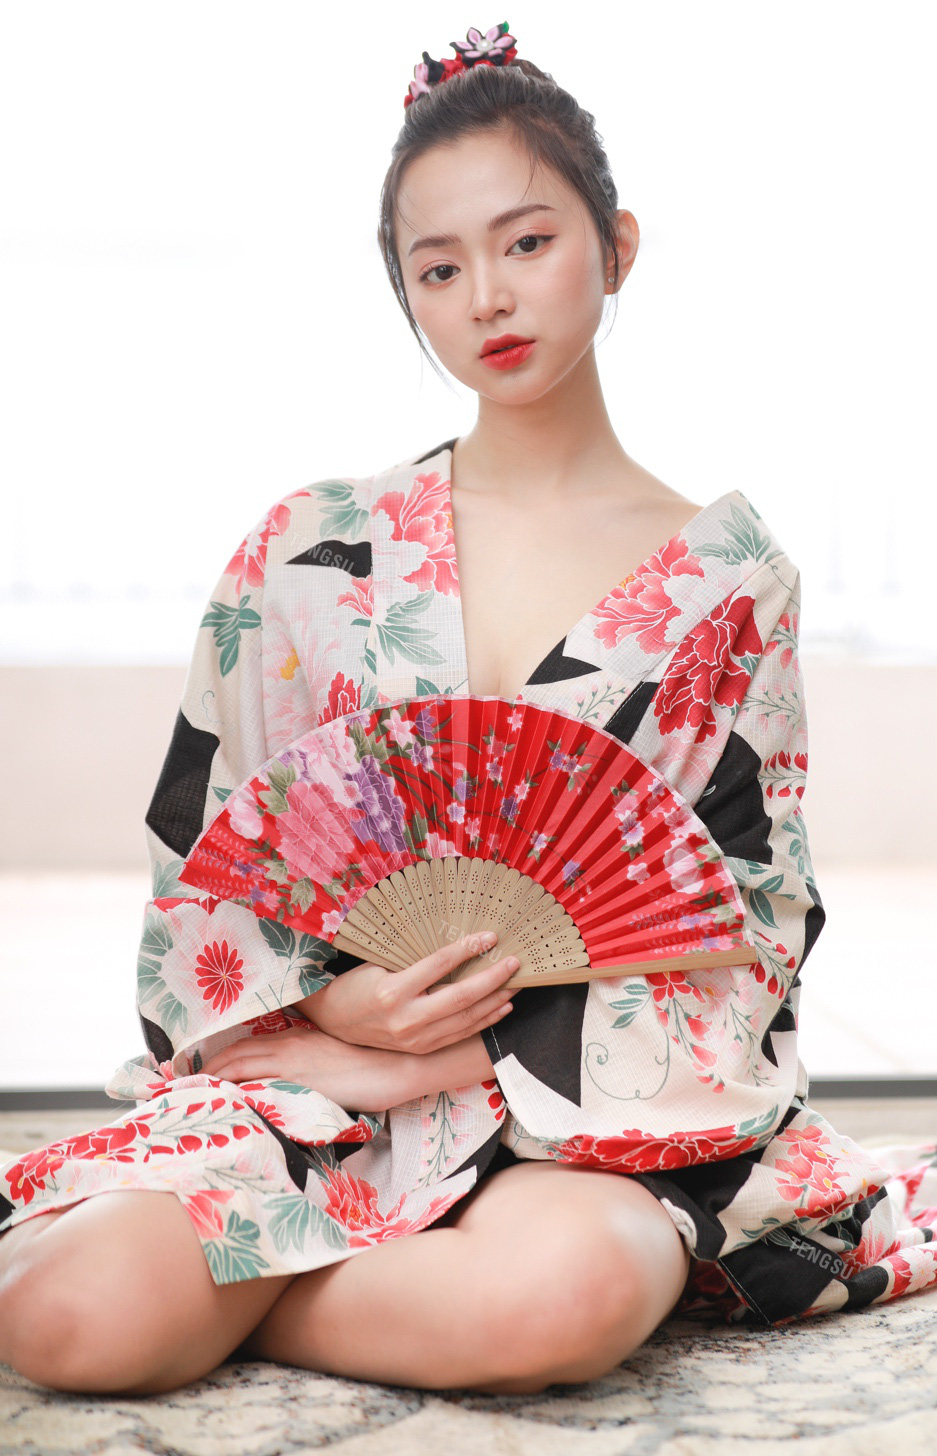 Bóng hồng streamer sinh năm 1999 lần đầu mặc kimono nóng bỏng, ai nấy đều ngỡ ngàng vì quá xinh - Ảnh 2.